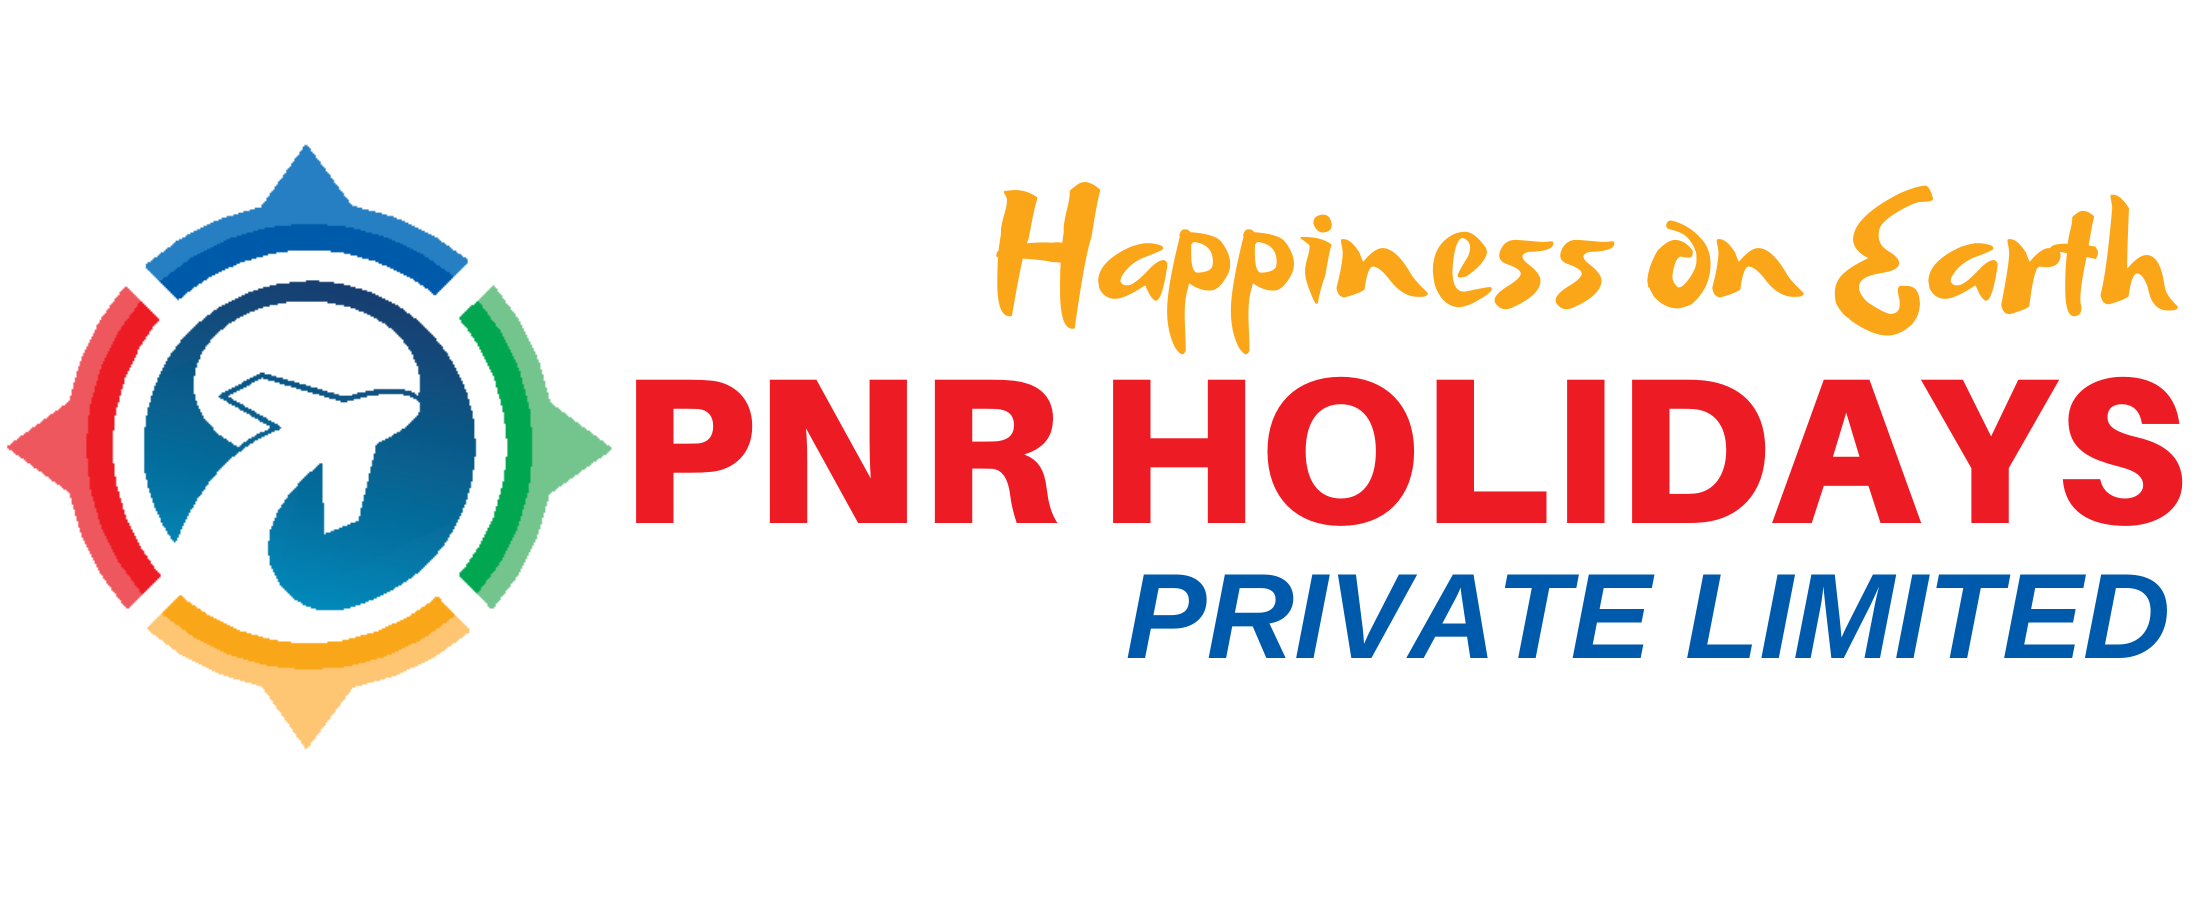 PNR HOLIDAYS